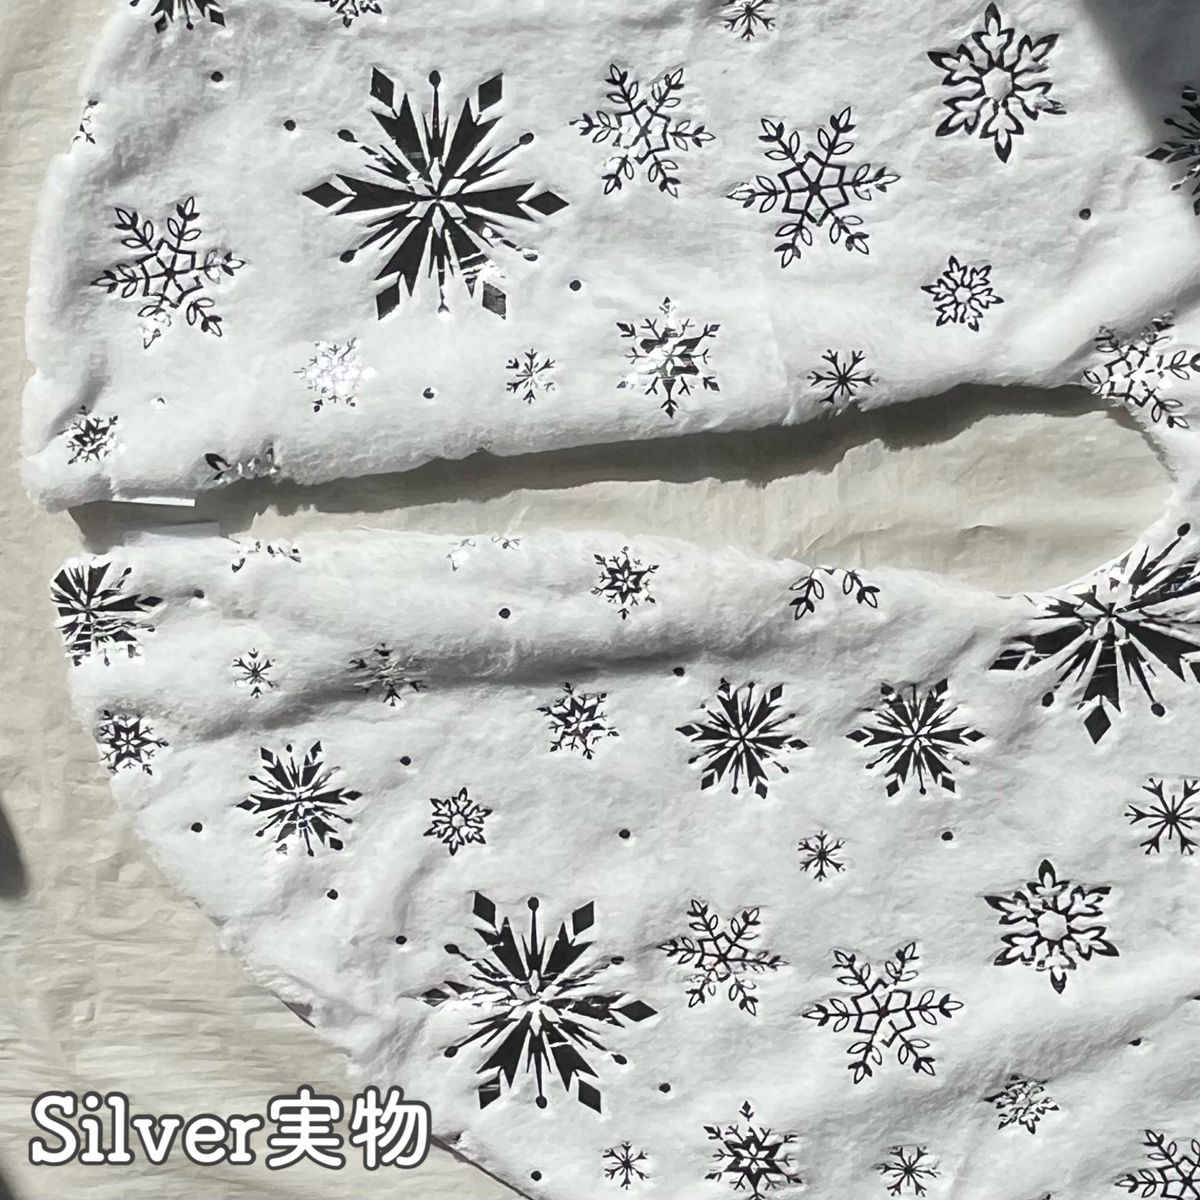 ツリースカート 78cm クリスマスツリー 足元隠し 装飾 ツリーマット シルバー 銀 白 プレゼント 雪 結晶